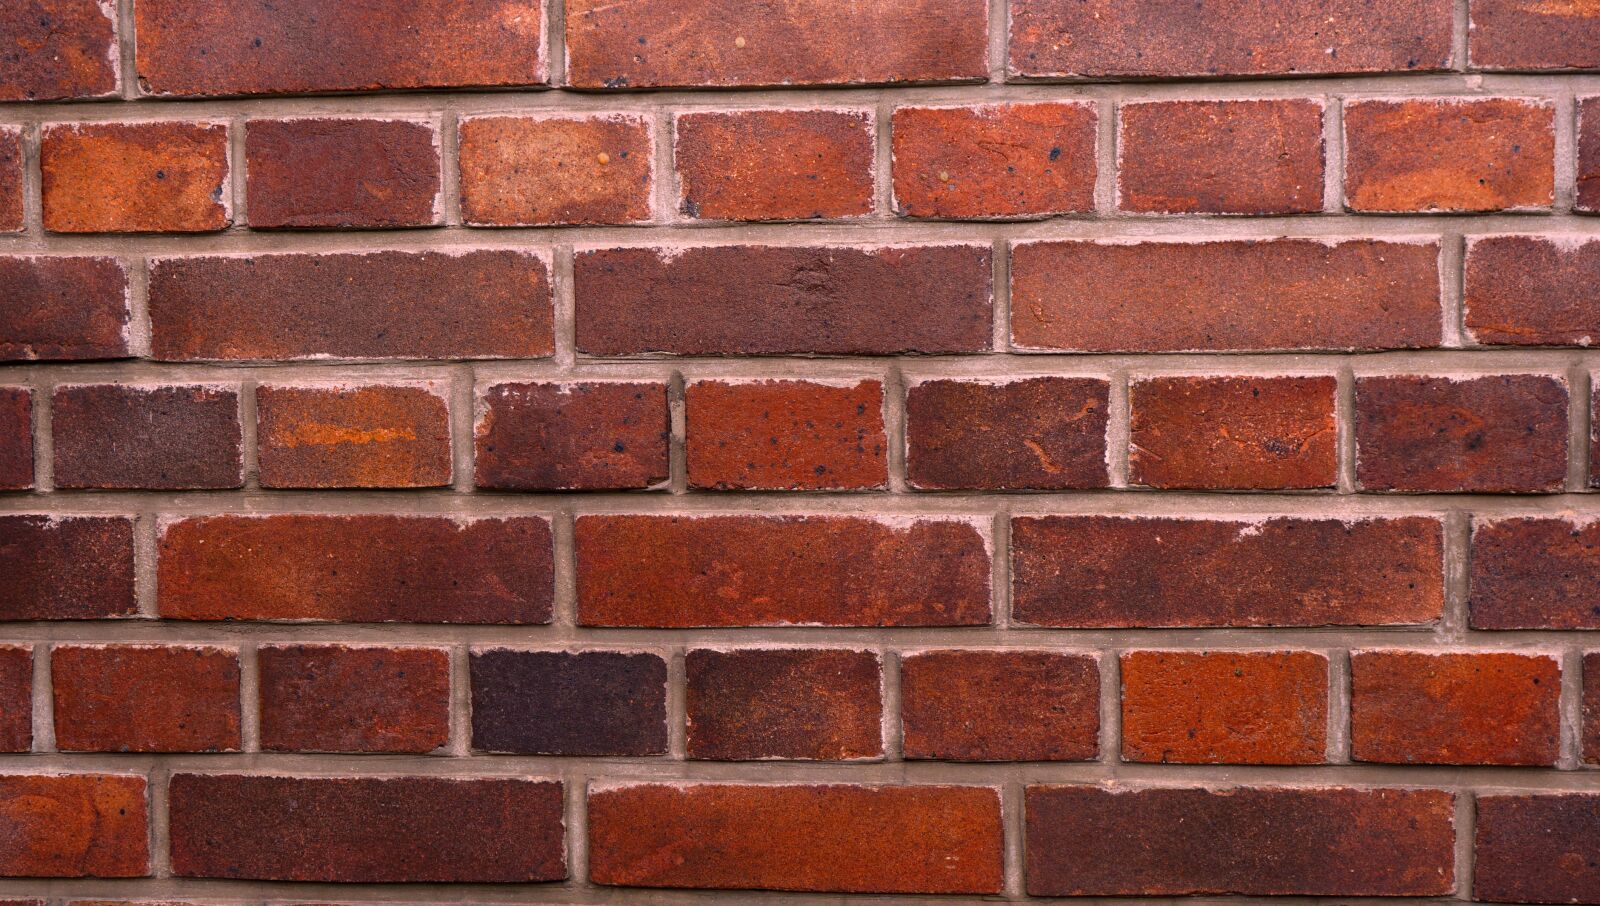 Sony a6000 + Sony FE 28-70mm F3.5-5.6 OSS sample photo. Background bricks, brick, wall photography